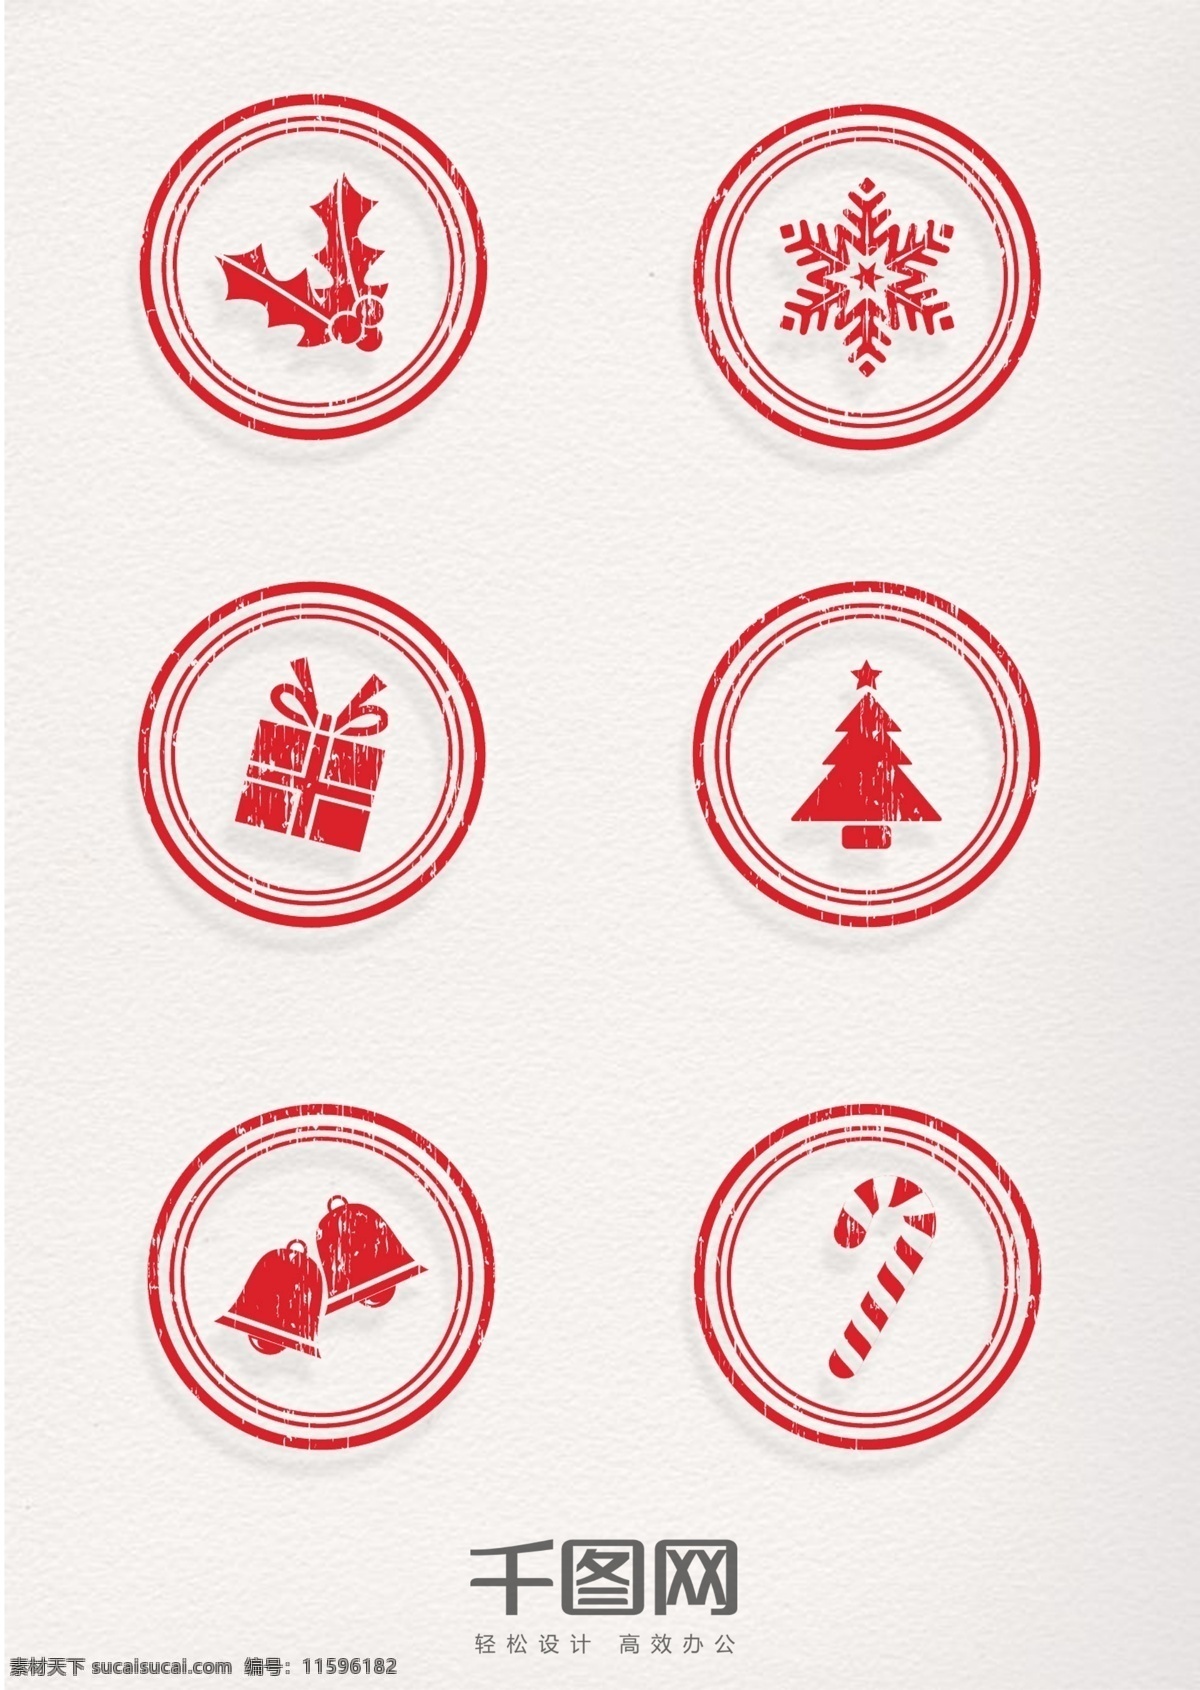 圣诞 元素 红色 圆形 复古 印章 圣诞树 礼物 礼盒 铃铛 雪花 松柏 松枝 圣诞拐杖 圣诞节 图标 圣诞装饰